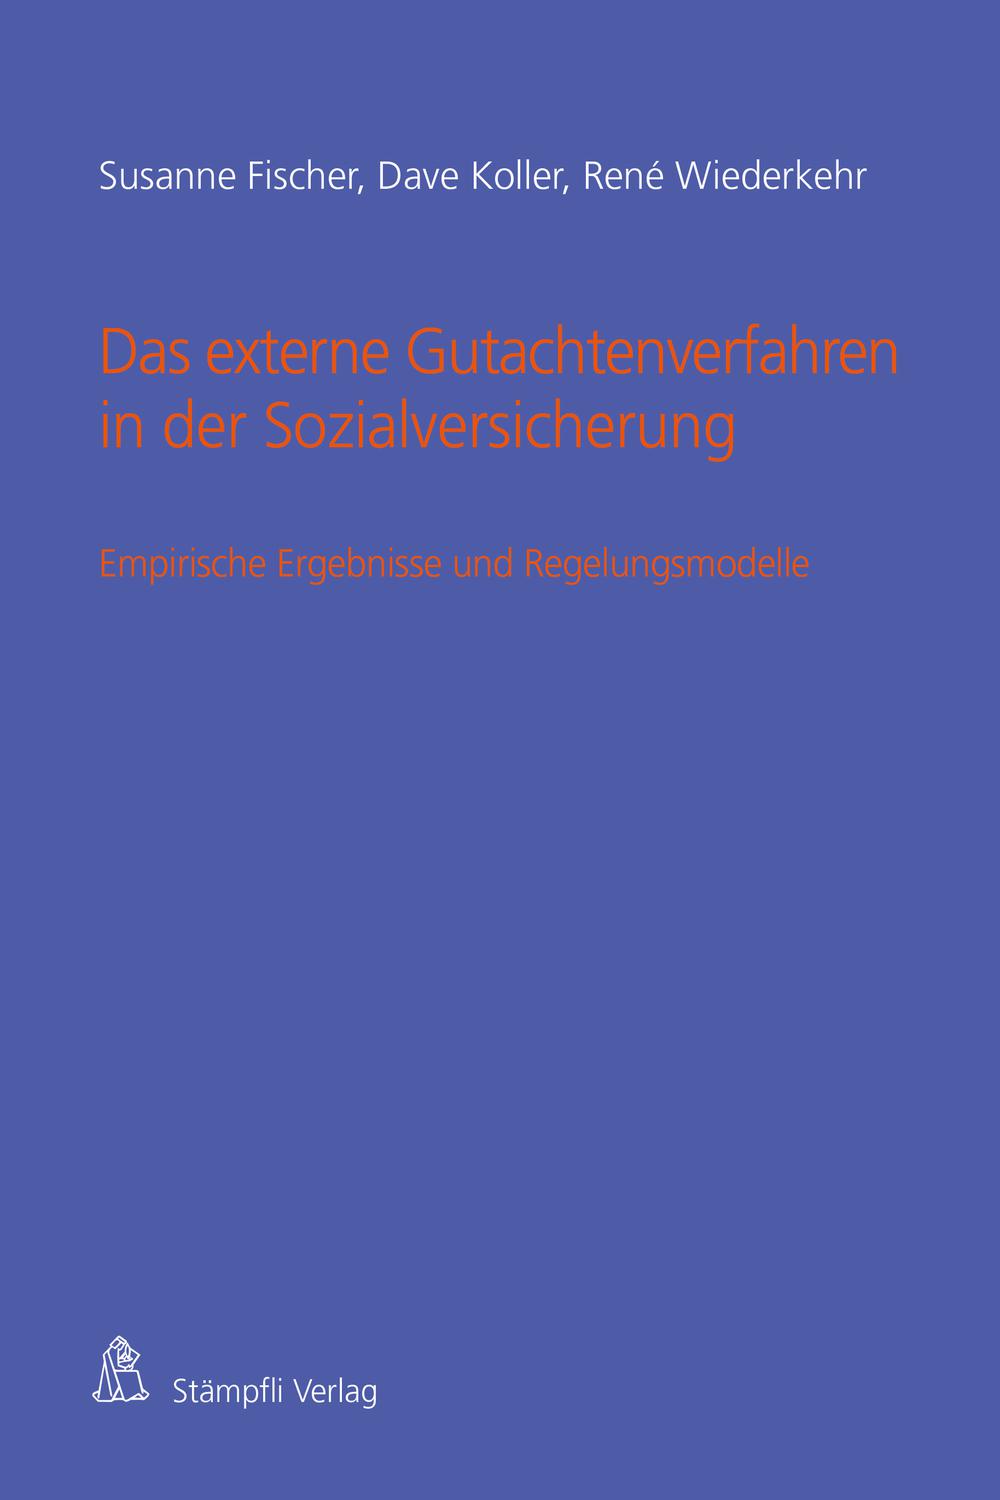 Das externe Gutachtenverfahren in der Sozialversicherung - Susanne Fischer, Dave Koller, René Wiederkehr